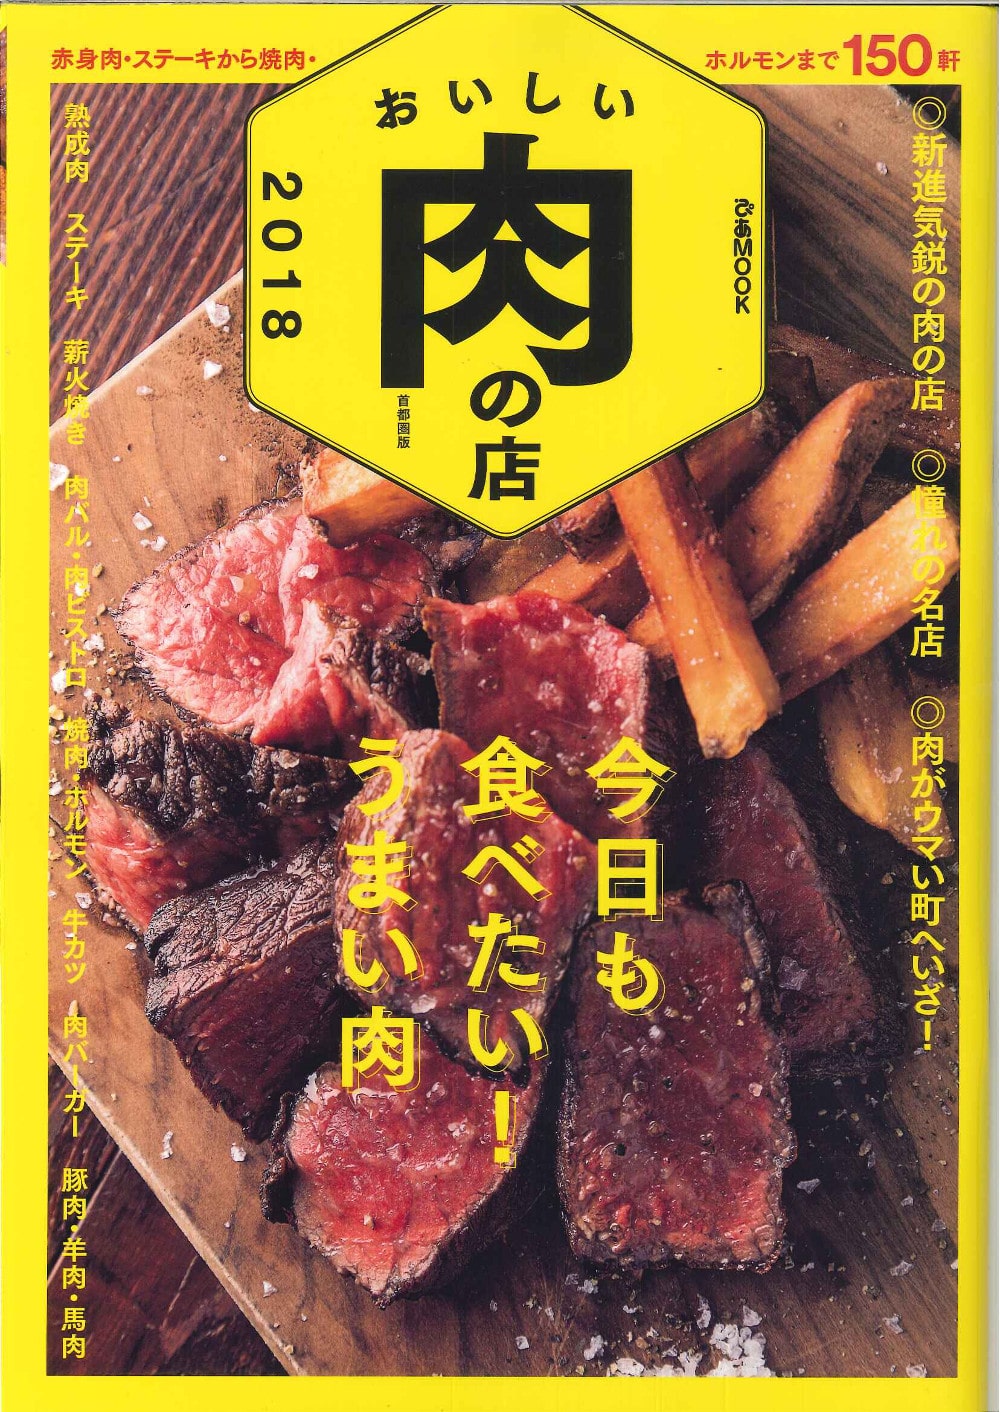 ぴあMOOKおいしい肉の店2018